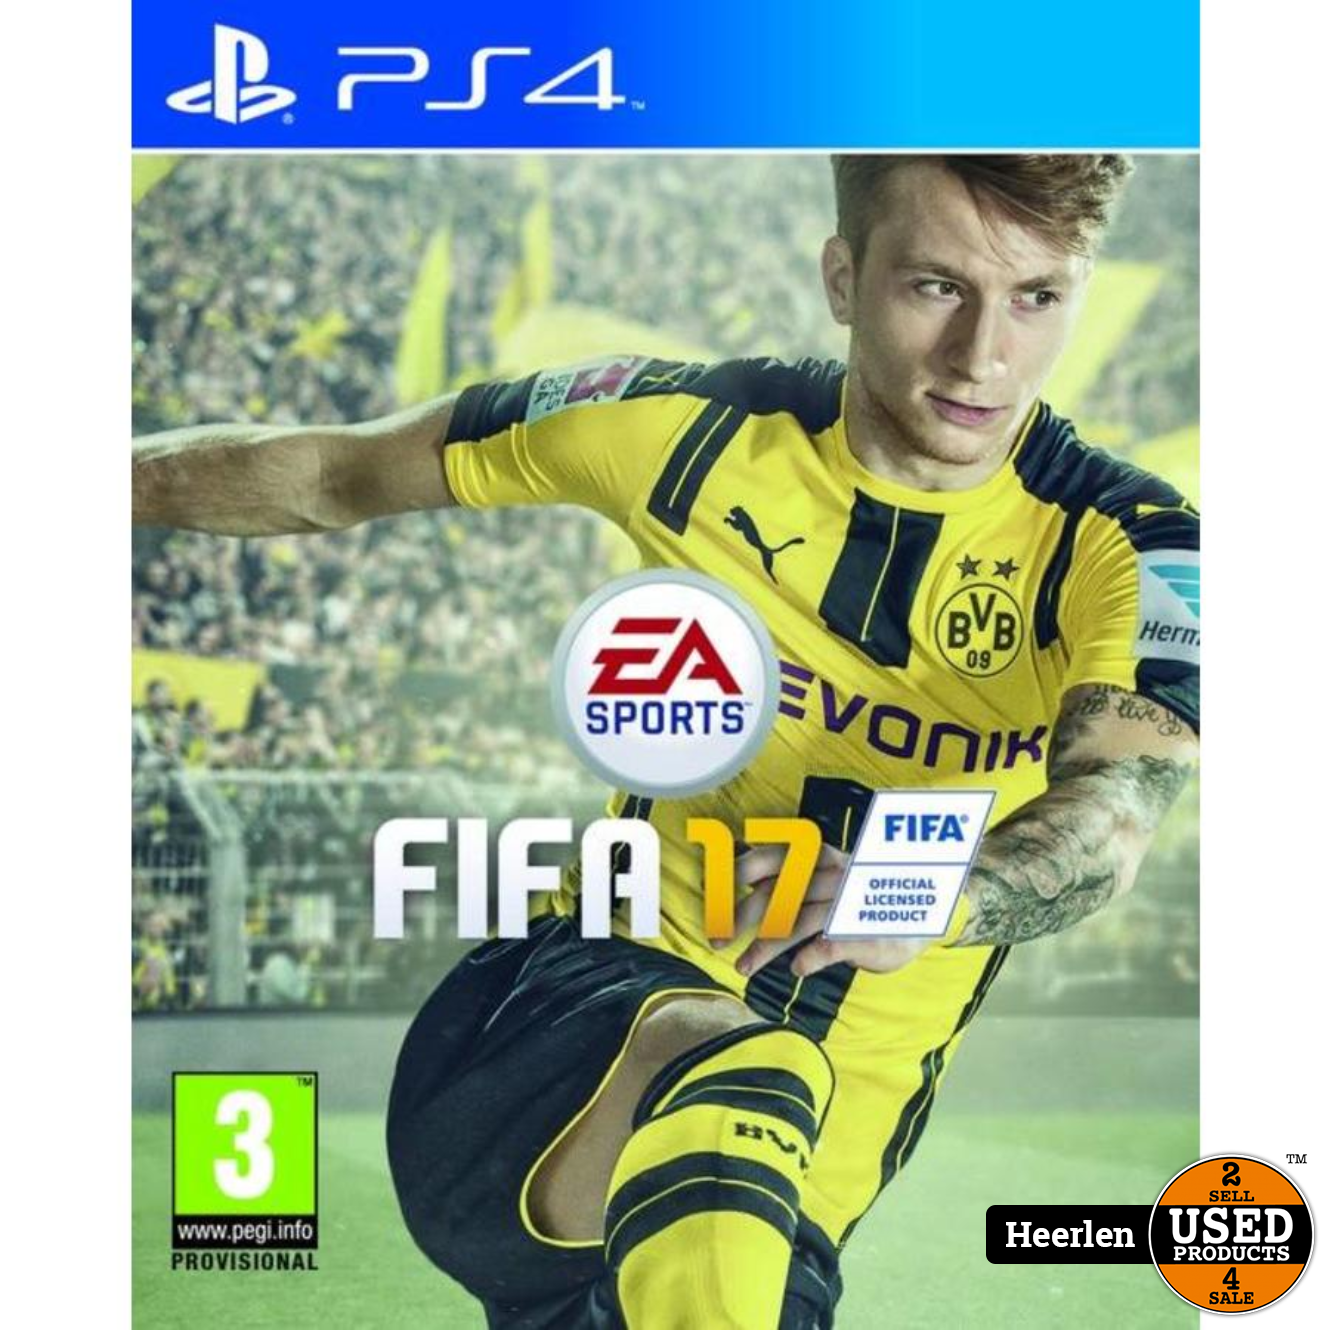 Mijnwerker Versterken regeren Sony FIFA 17 | PlayStation 4 Game | B-Grade - Used Products Heerlen